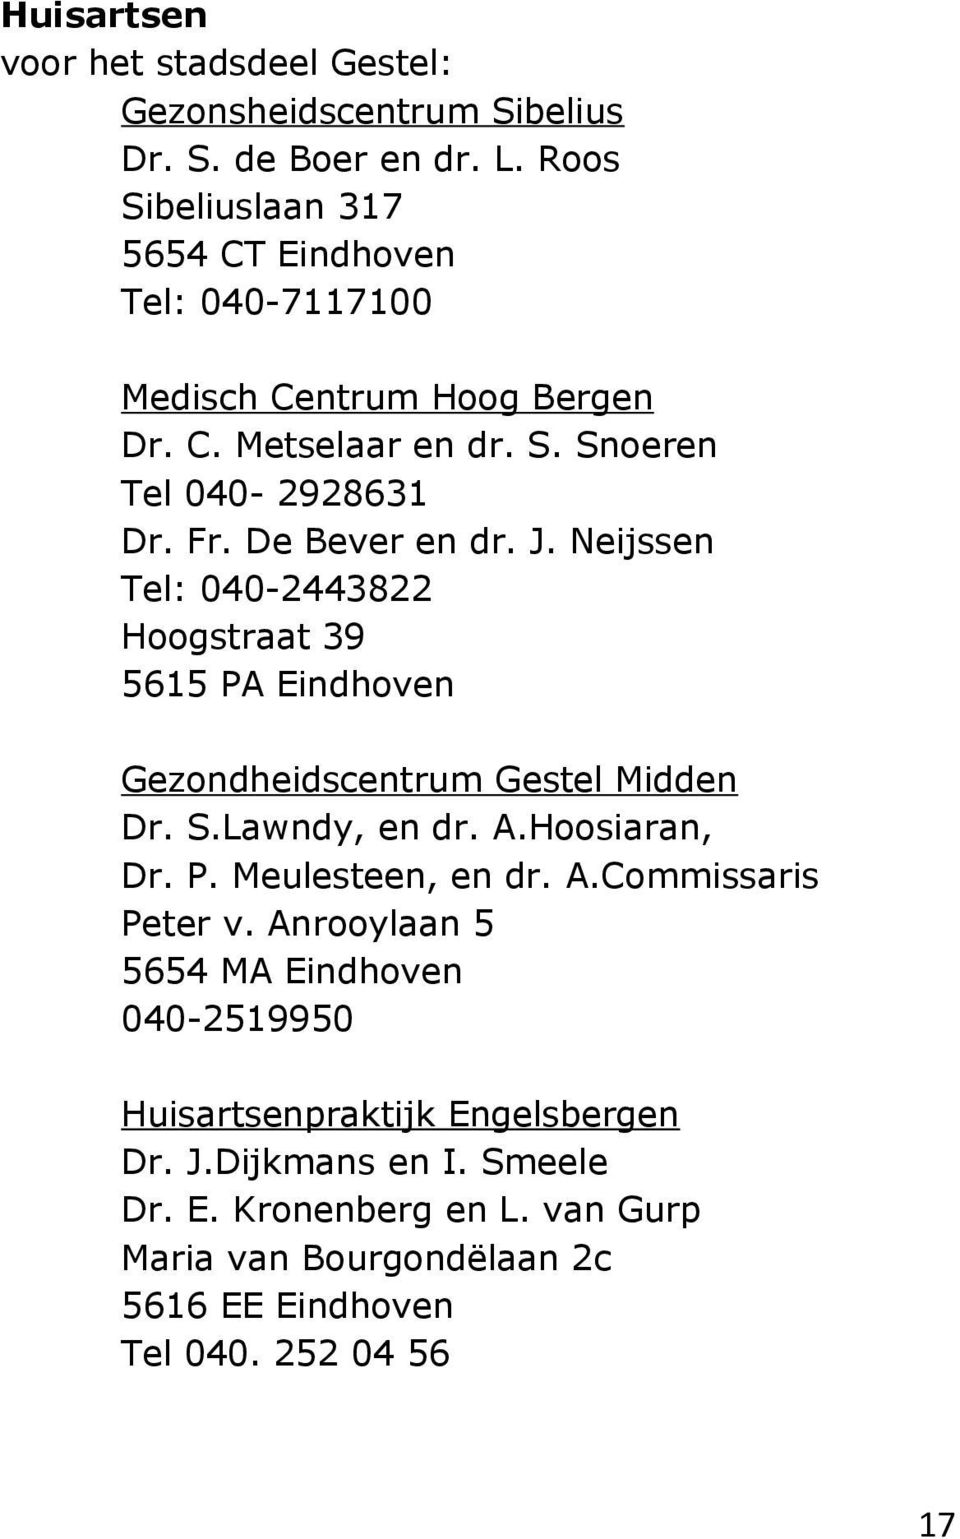 De Bever en dr. J. Neijssen Tel: 040-2443822 Hoogstraat 39 5615 PA Eindhoven Gezondheidscentrum Gestel Midden Dr. S.Lawndy, en dr. A.Hoosiaran, Dr. P. Meulesteen, en dr.